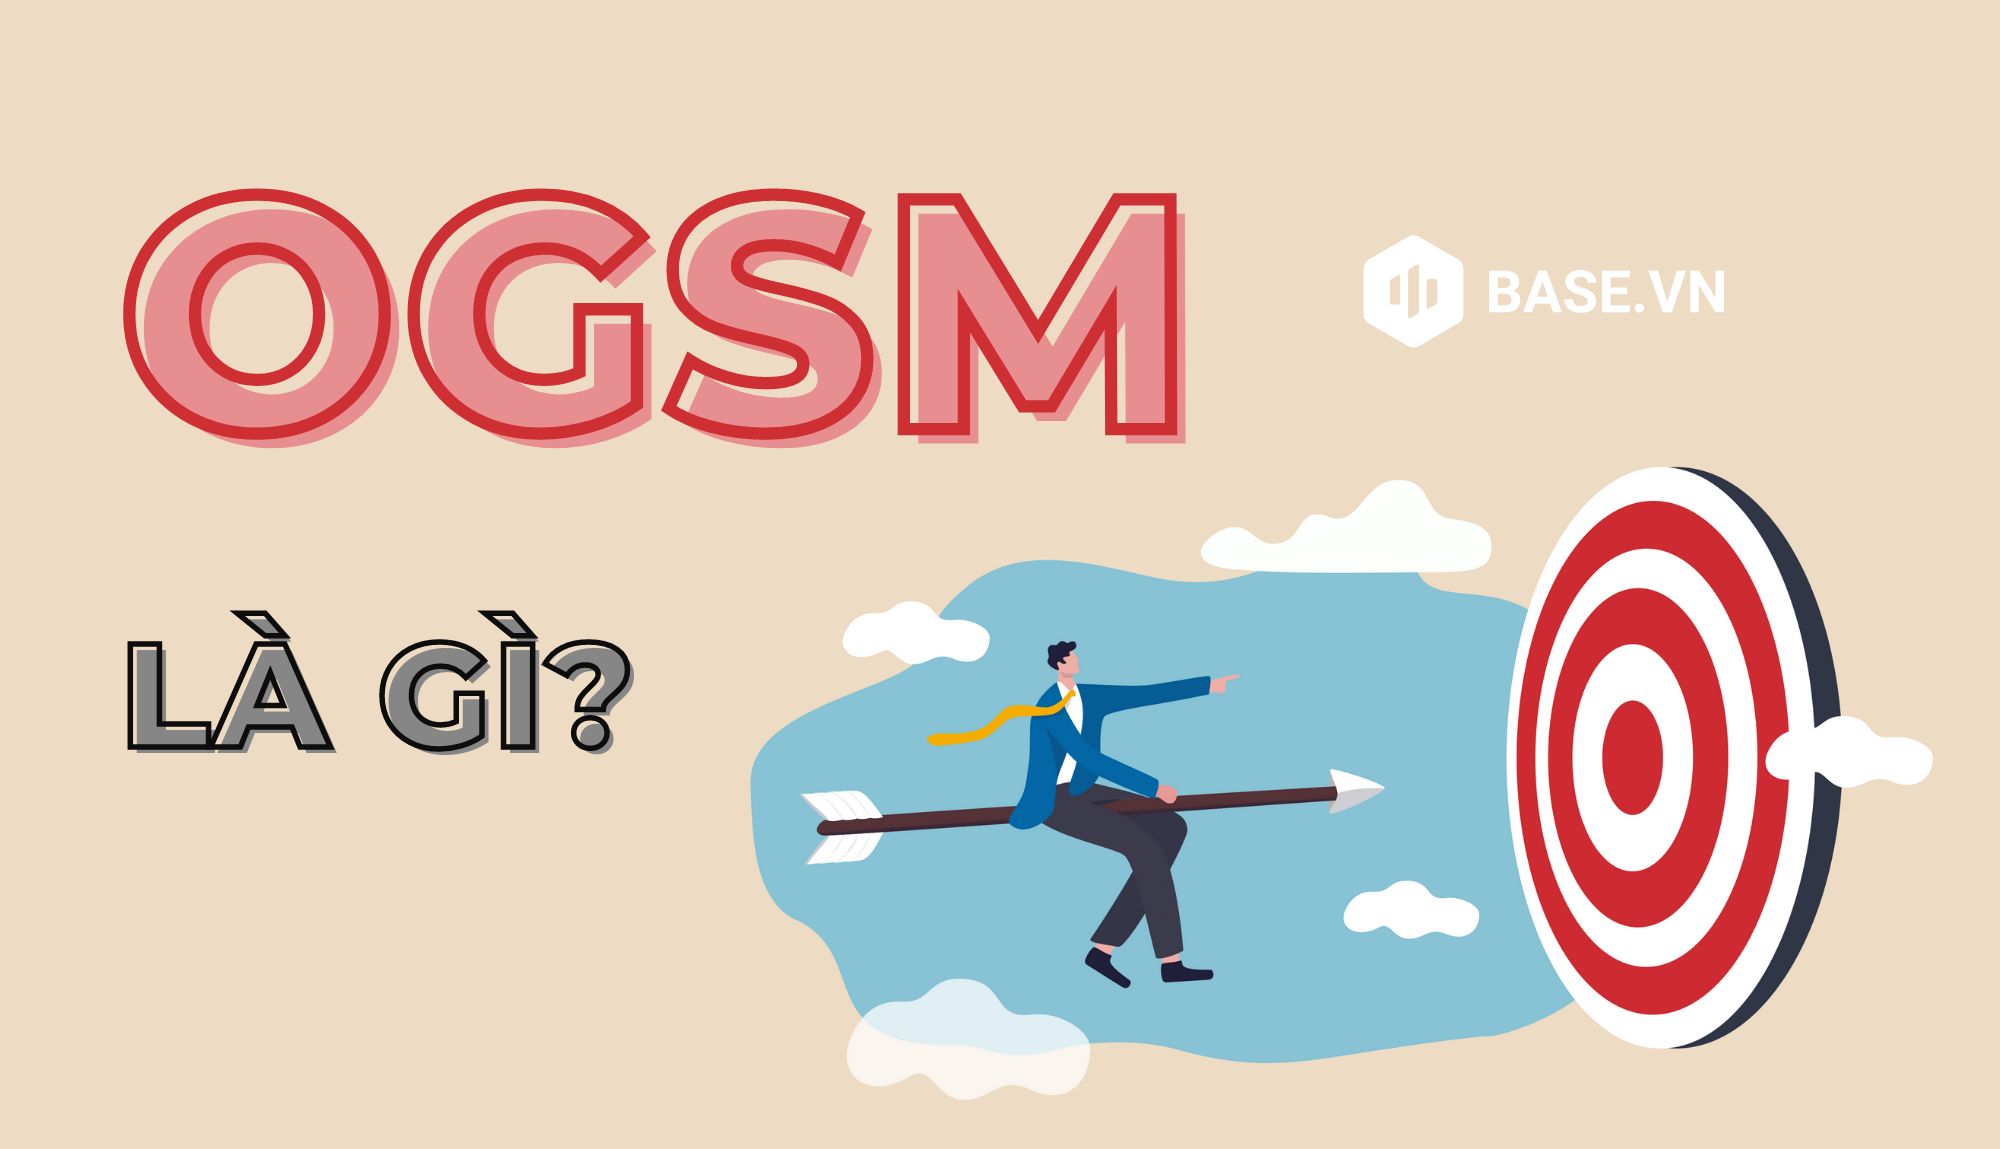 OGSM là gì và tại sao nó quan trọng trong hoạch định chiến lược?
